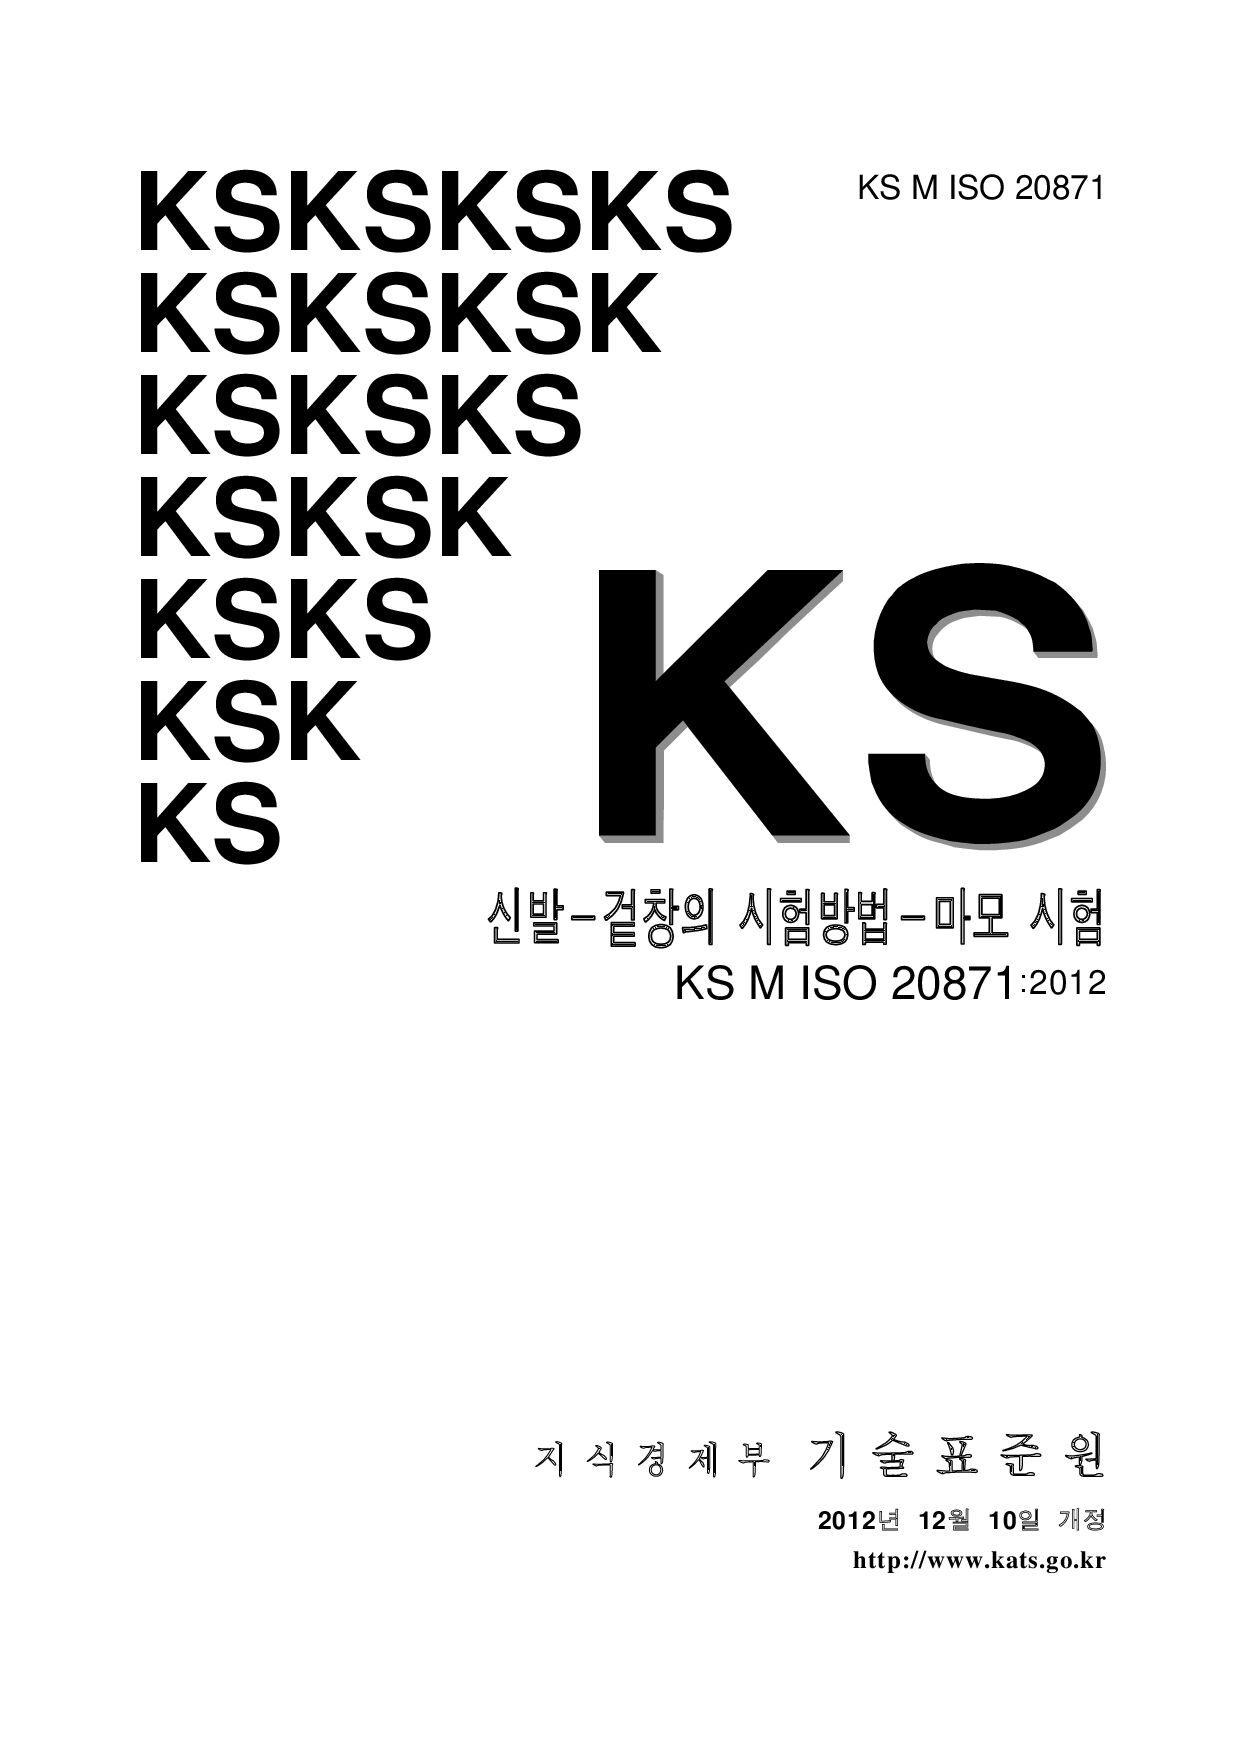 KS M ISO 306:2012